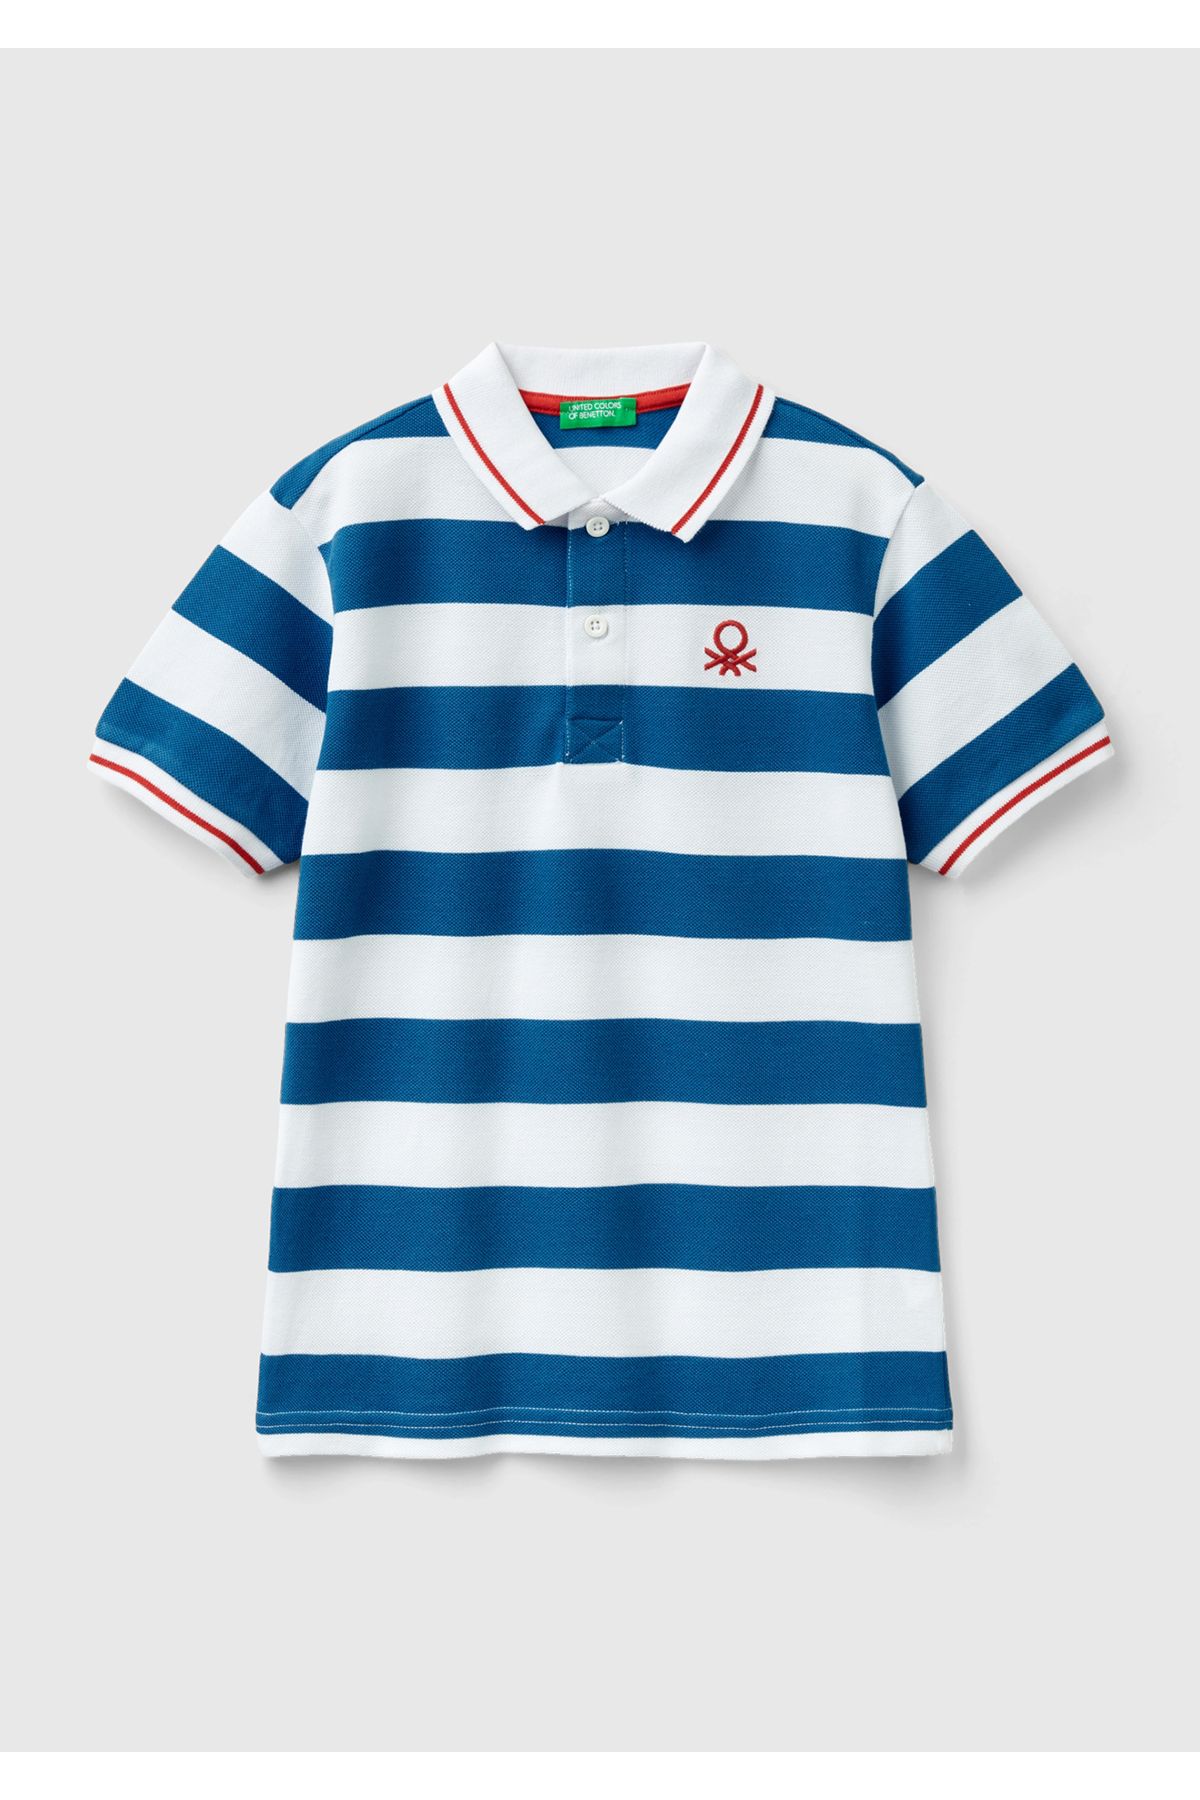 United Colors of Benetton Erkek Çocuk Mavi-Beyaz Logo İşlemeli Çizgili Pike Polo T-Shirt